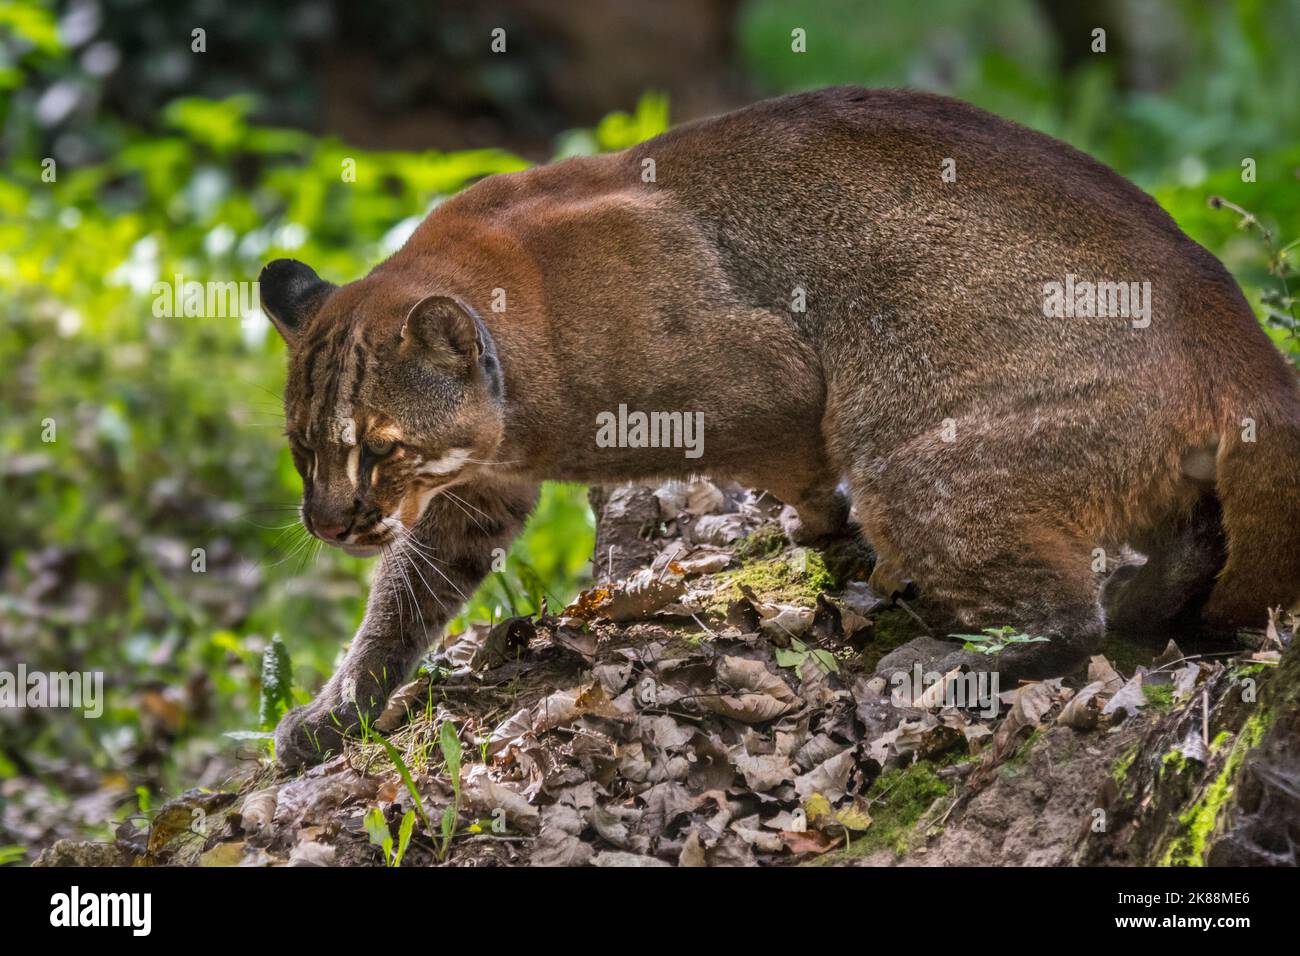 Gatto d'oro asiatico / gatto di Temminck / gatto d'oro asiatico (Catopuma temminckii) caccia nella foresta, nativo dell'India, del sud-est asiatico e della Cina Foto Stock